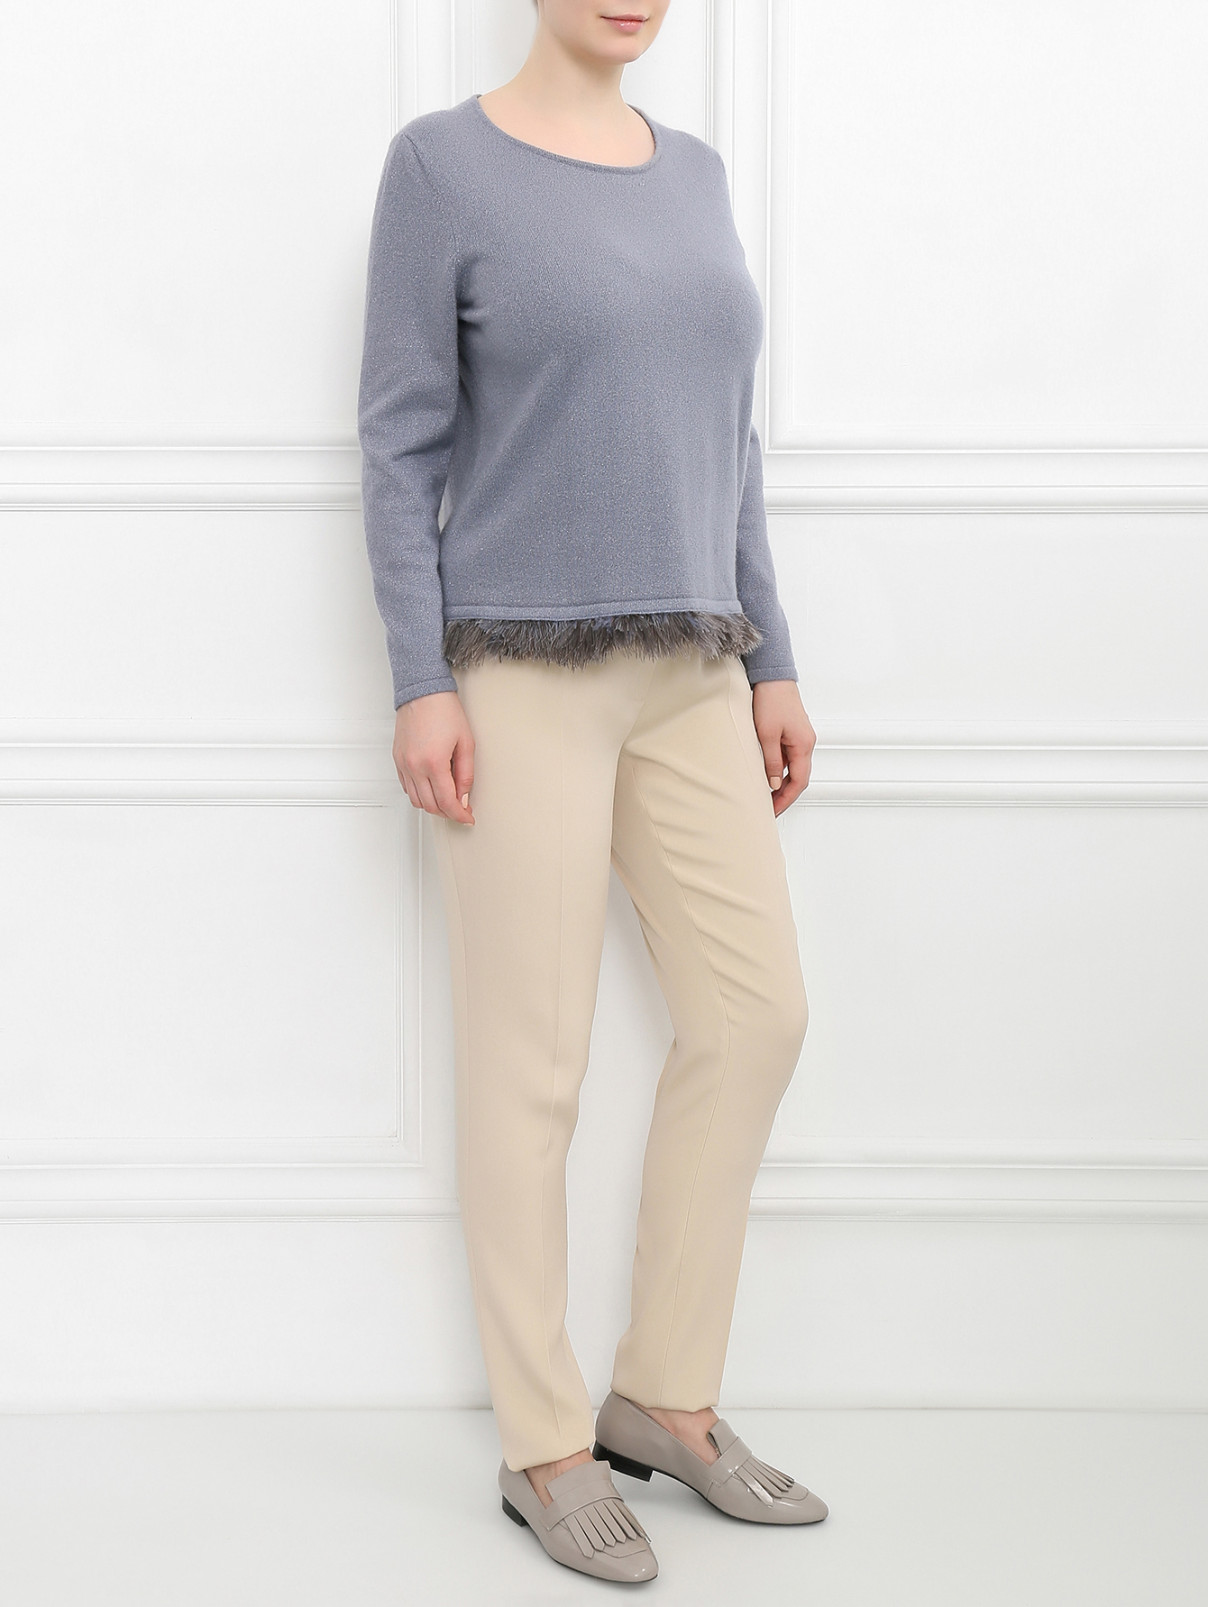 Узкие брюки со стрелками Marina Rinaldi  –  Модель Общий вид  – Цвет:  Бежевый